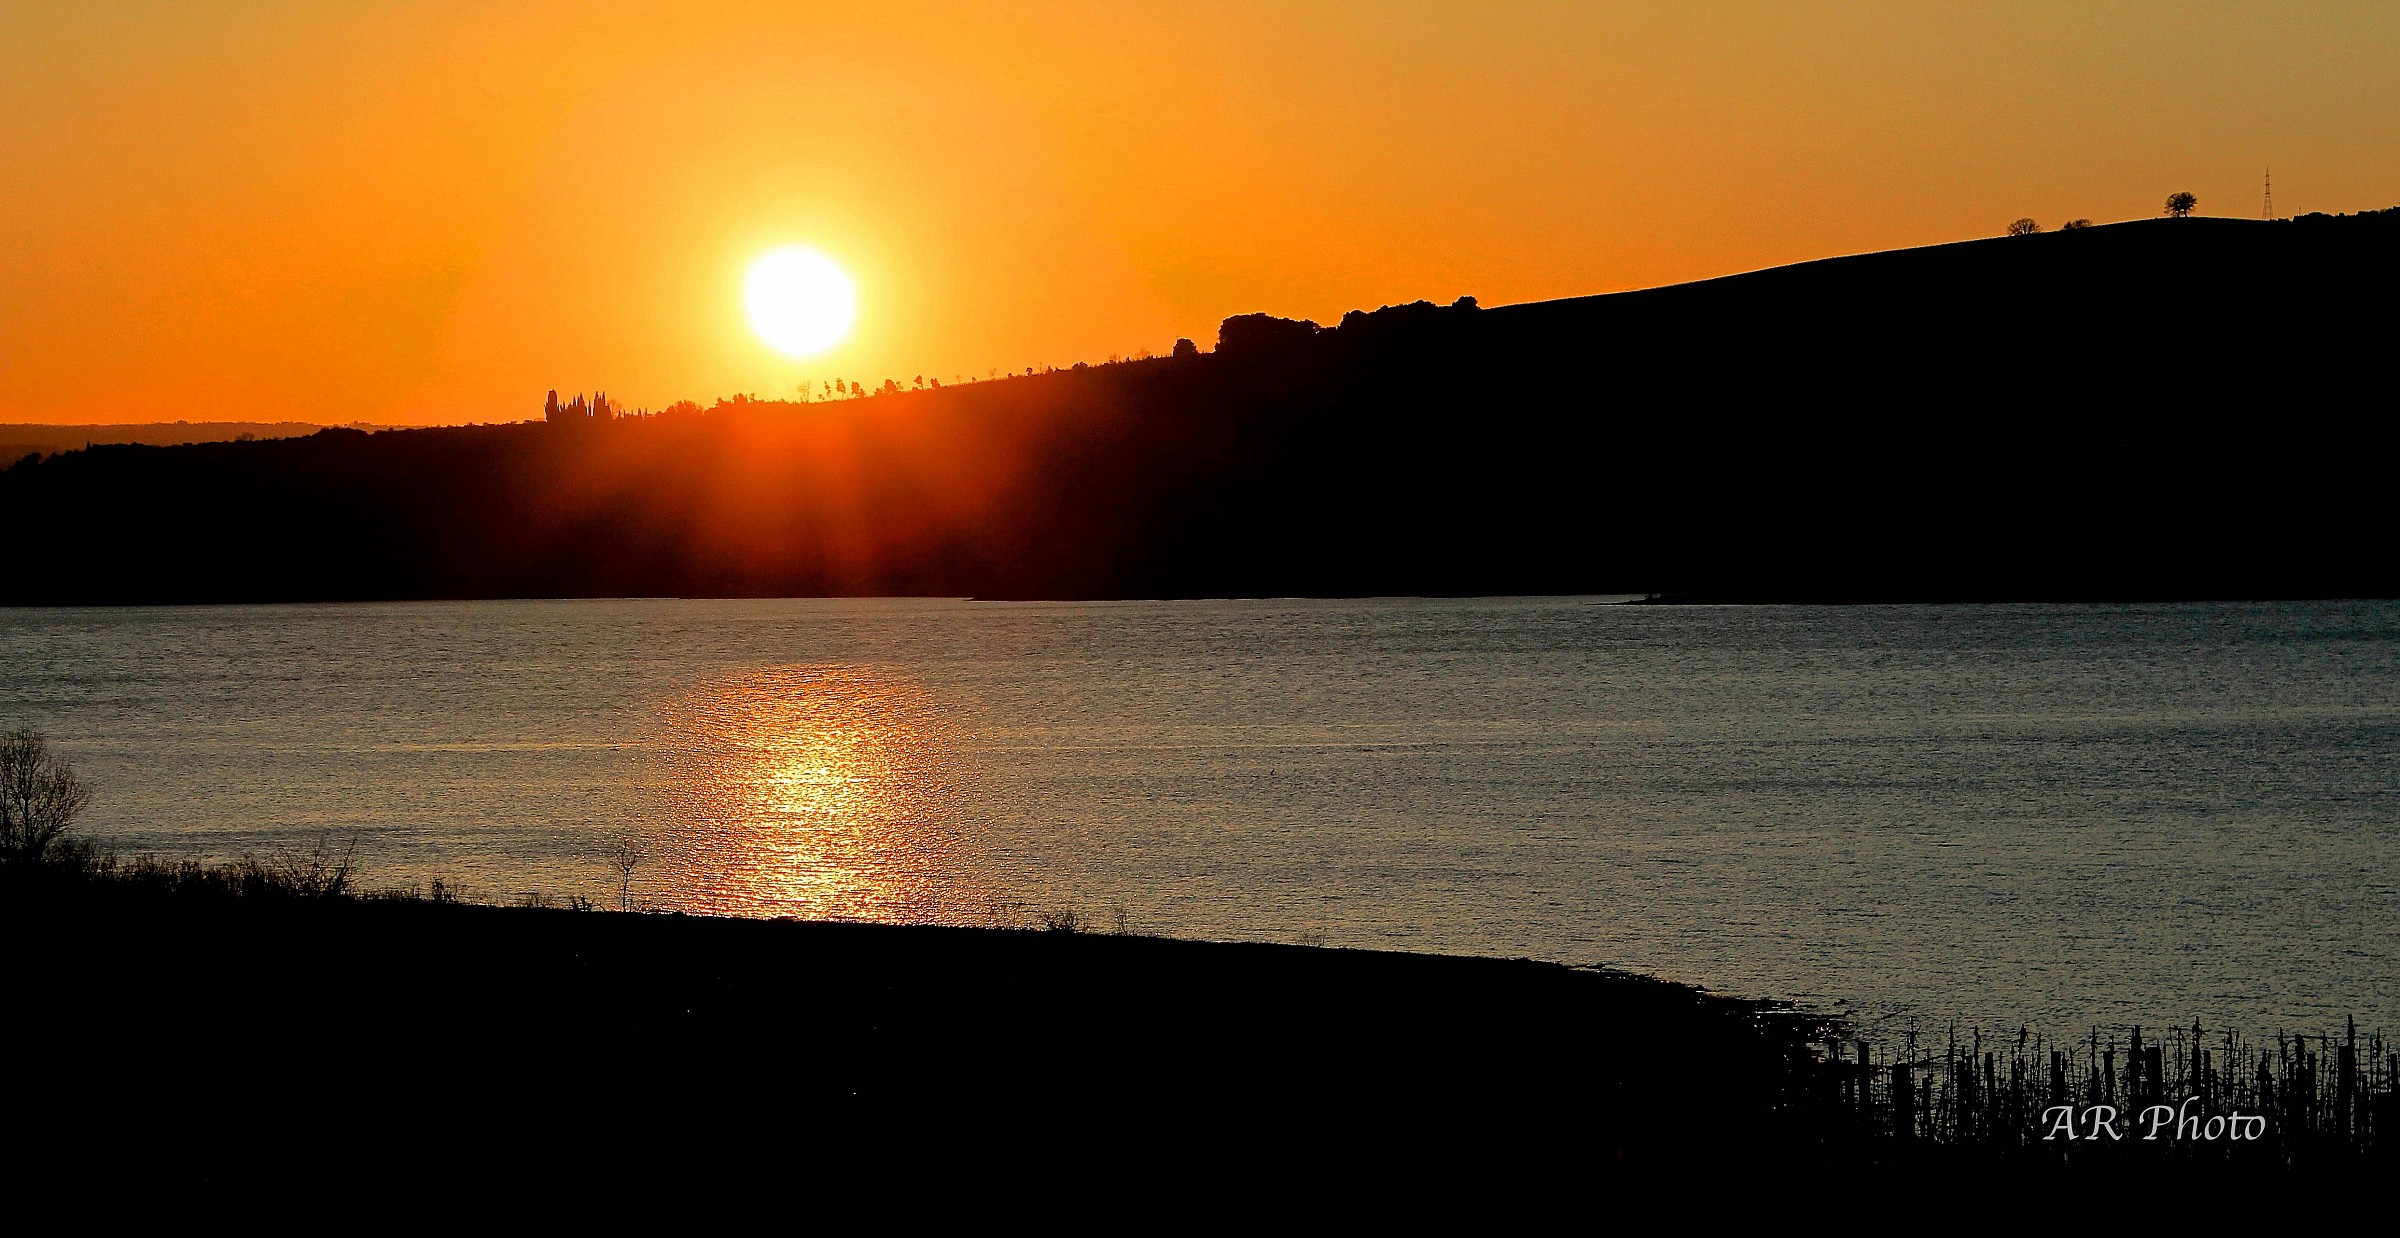 Sunset at the lake...